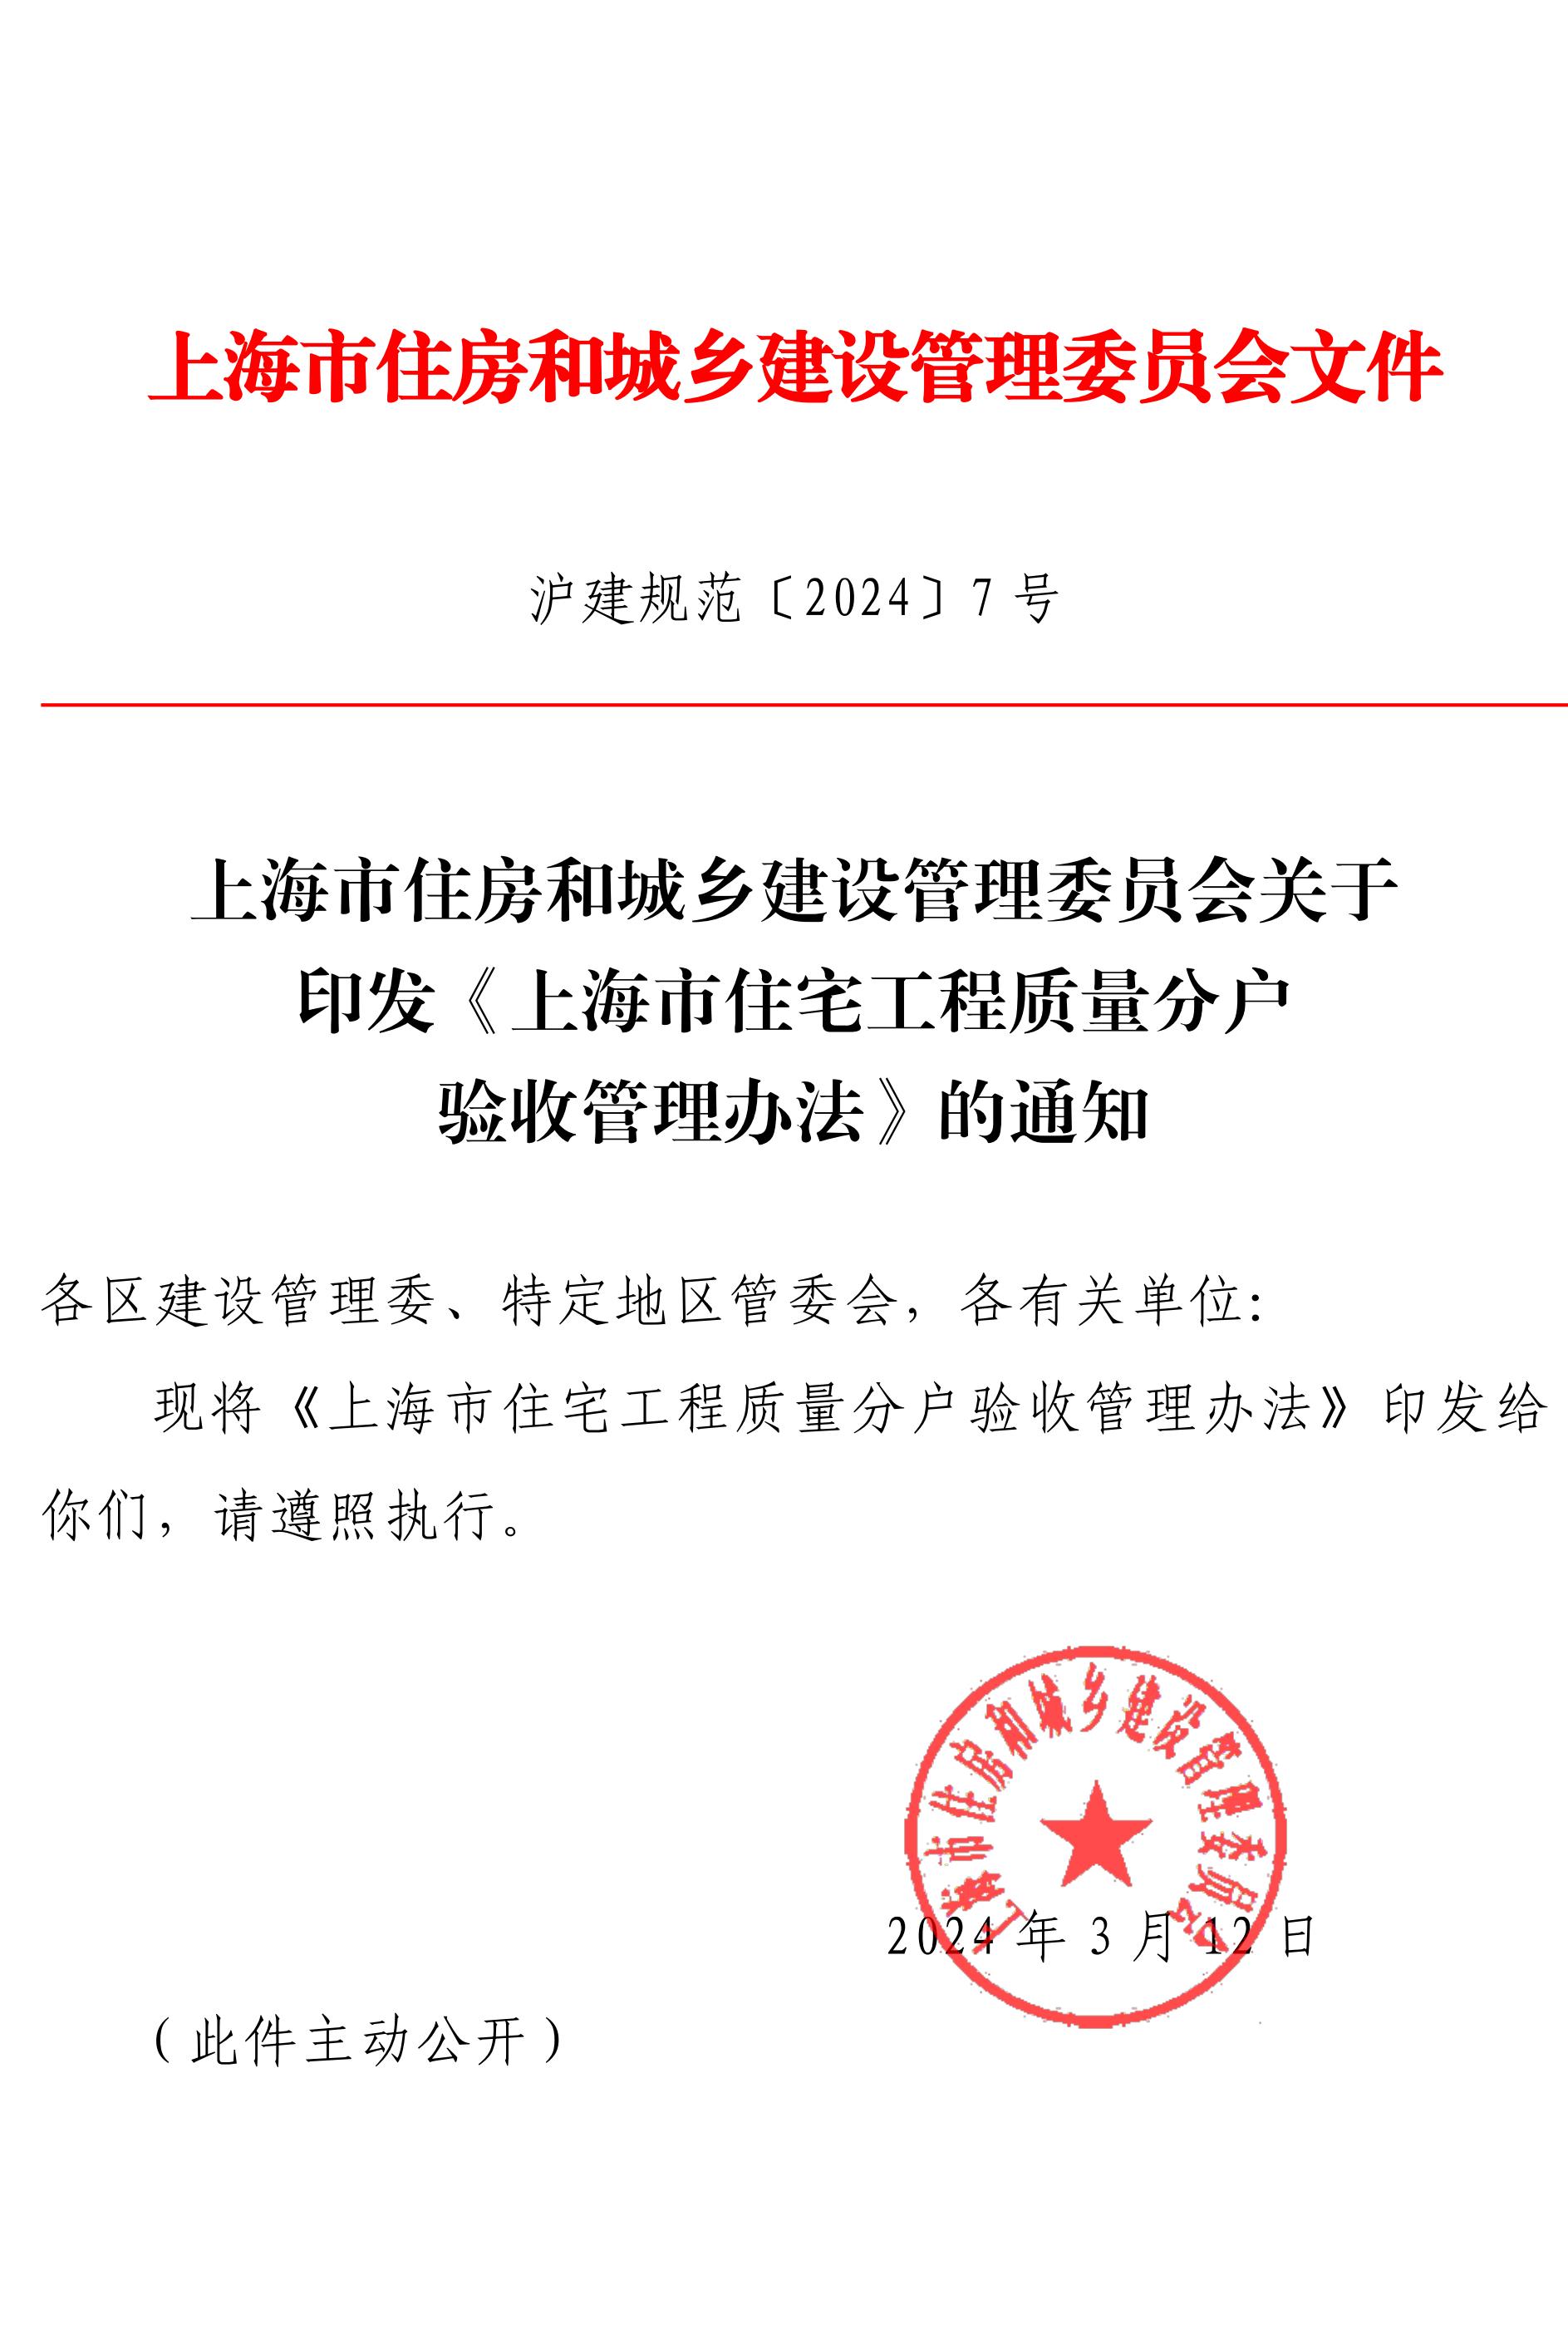 关于印发《上海住宅工程质量分户验收管理办法》的通知-副本_00.jpg